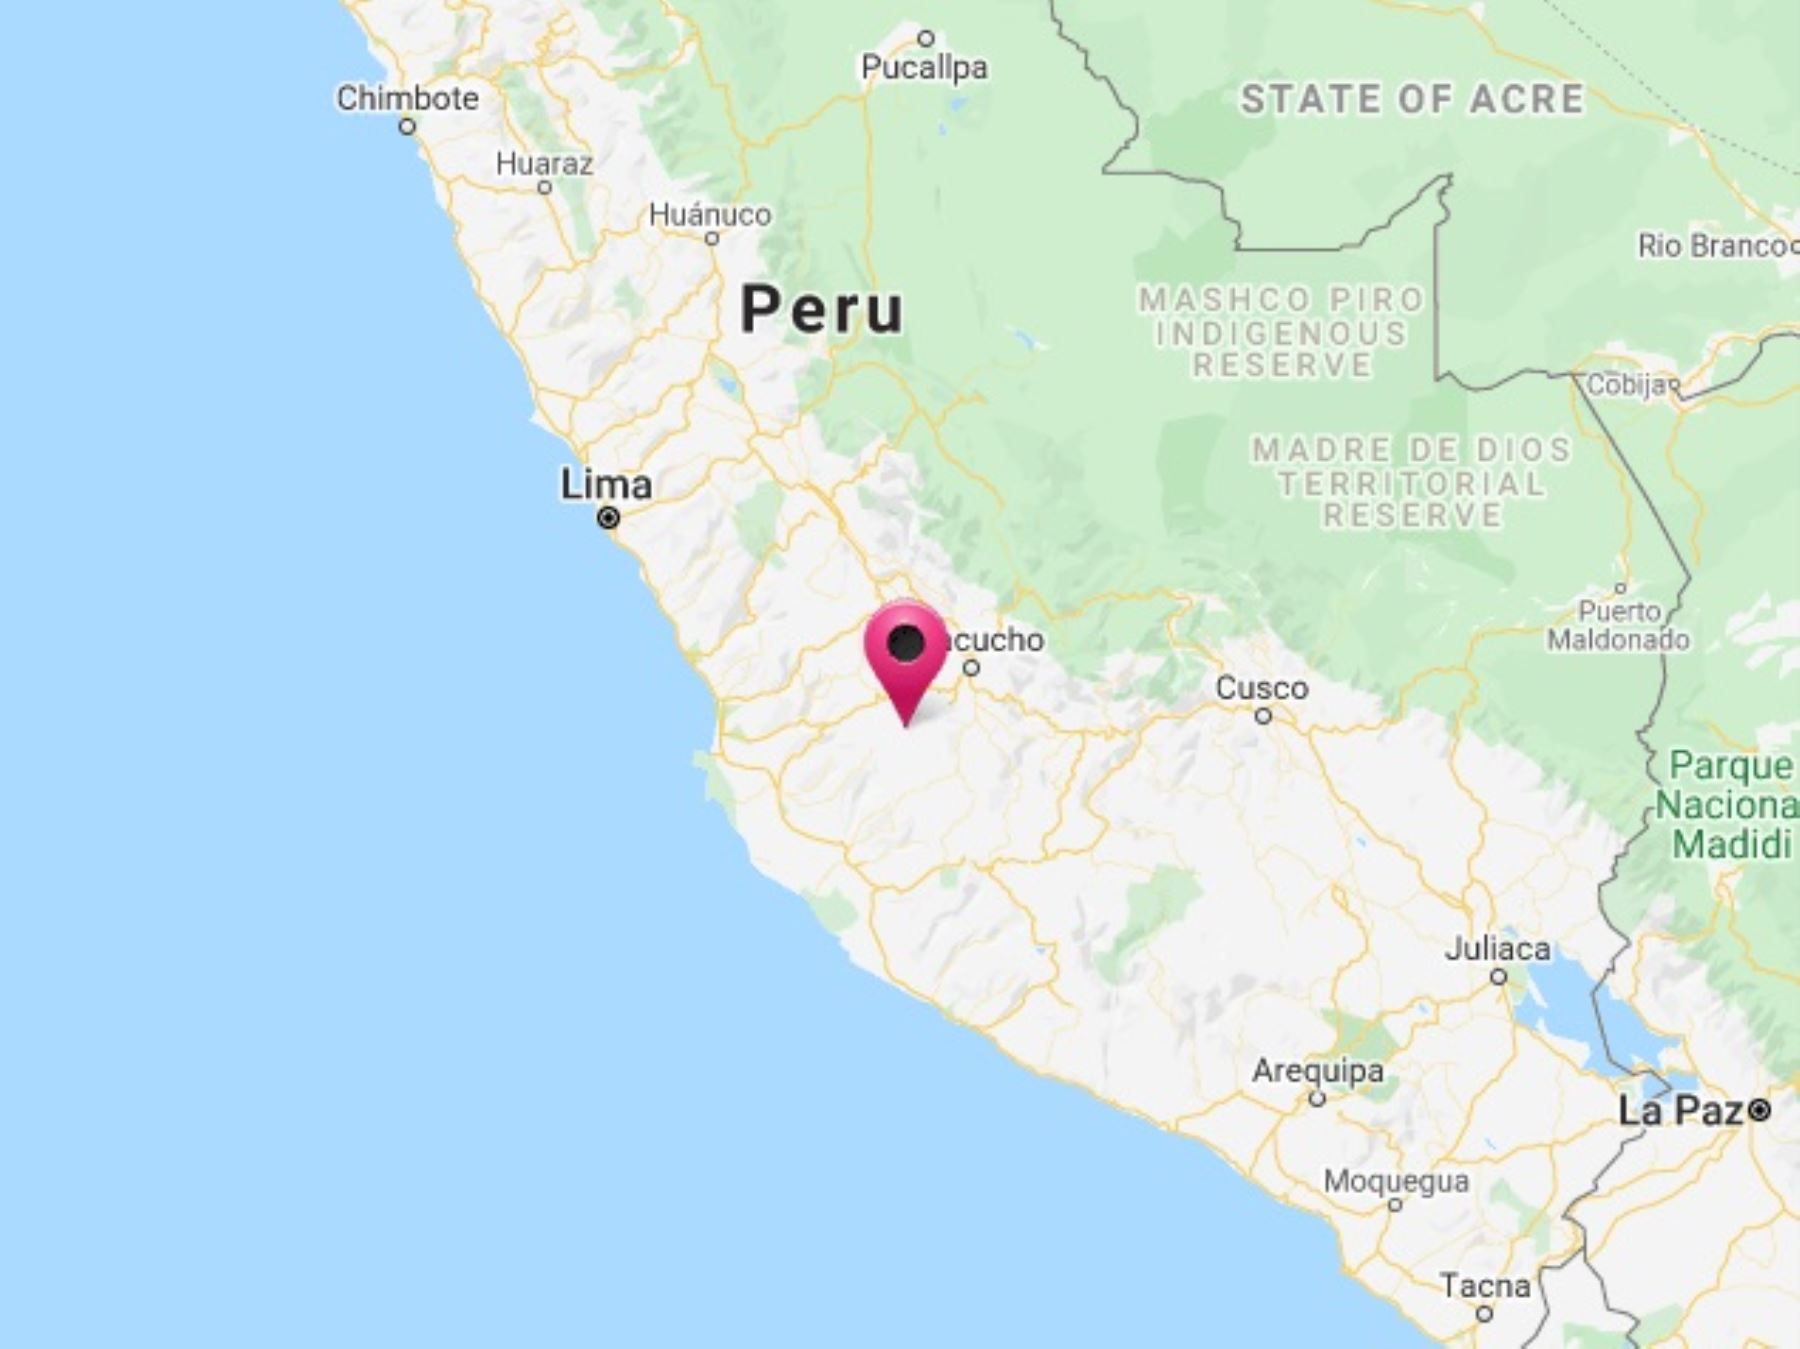 Un sismo de magnitud 4.3 remeció Ayacucho esta mañana, informó el IGP.